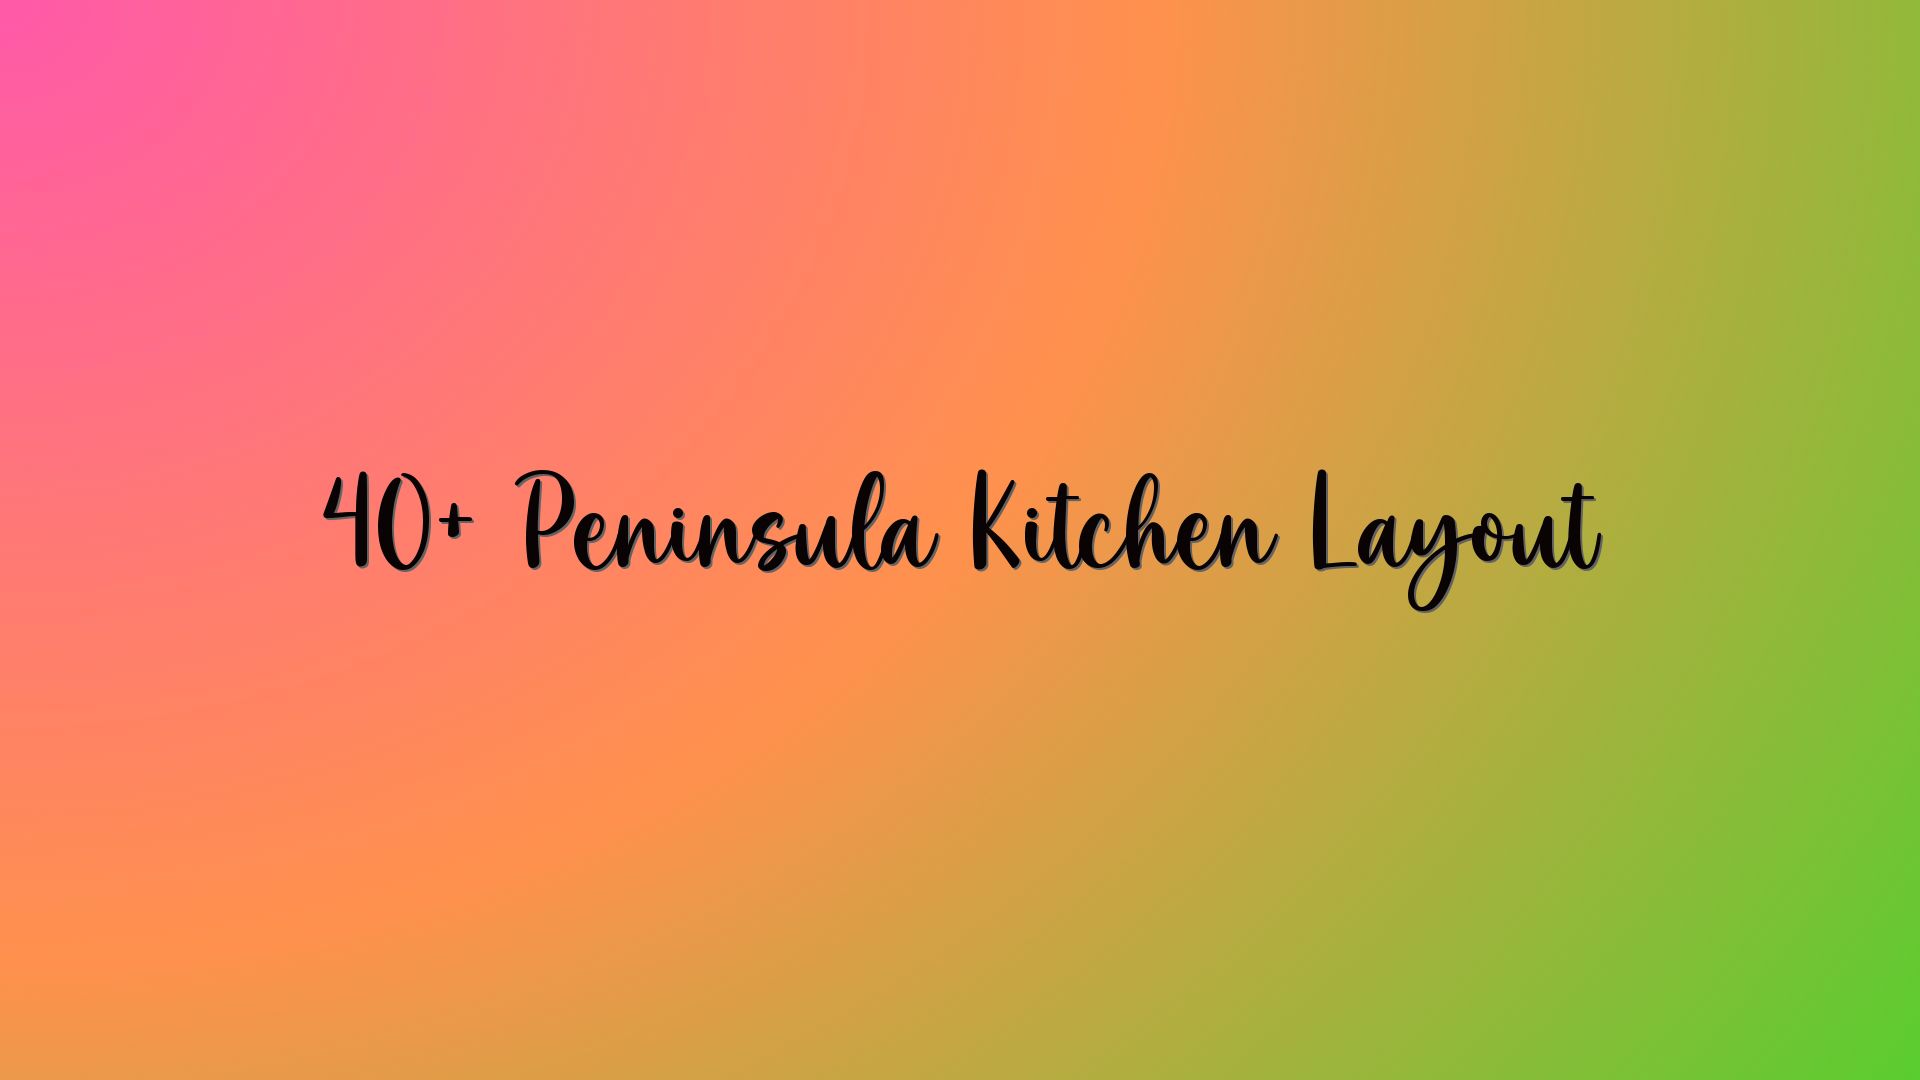 40+ Peninsula Kitchen Layout